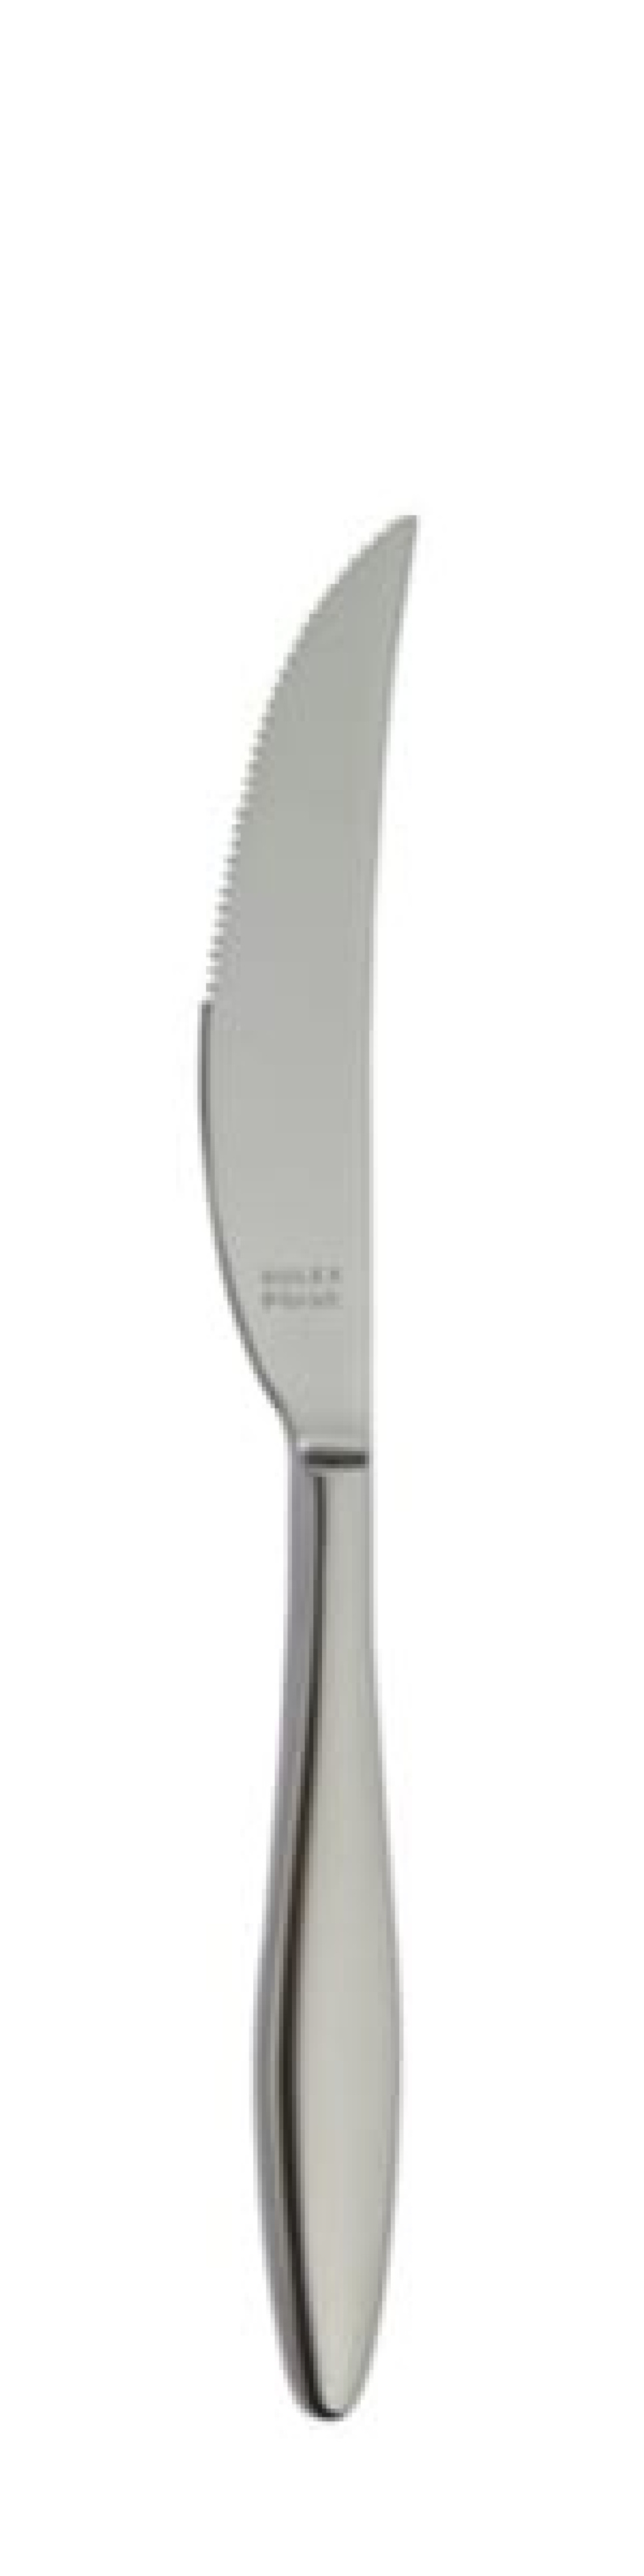 Terra Retro Steakmesser 239 mm - Solex in der Gruppe Tischgedeck / Besteck / Messer bei The Kitchen Lab (1284-21663)